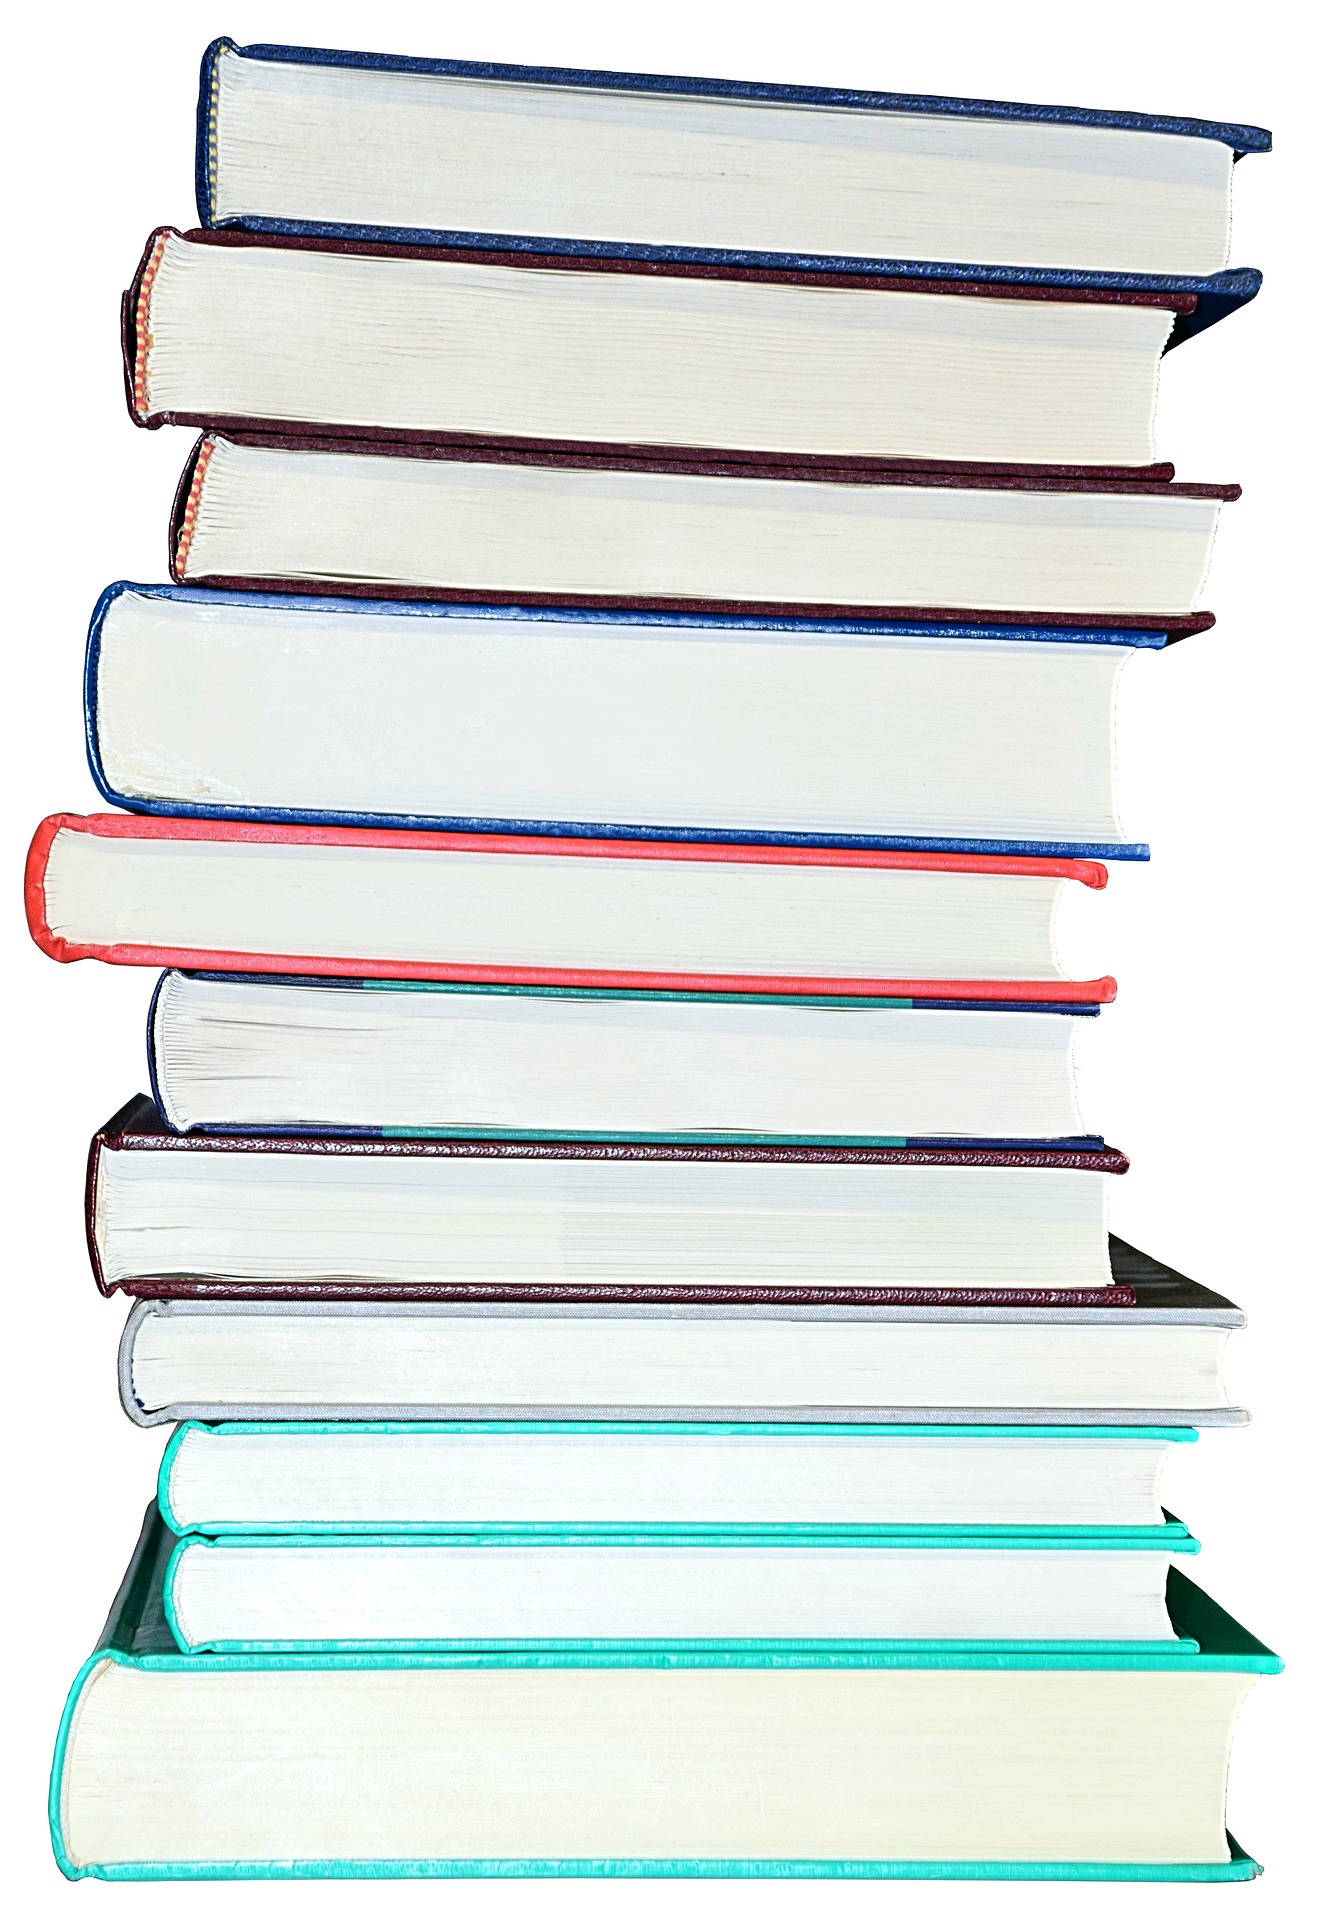 books-1931195_1920 (c) pixabay